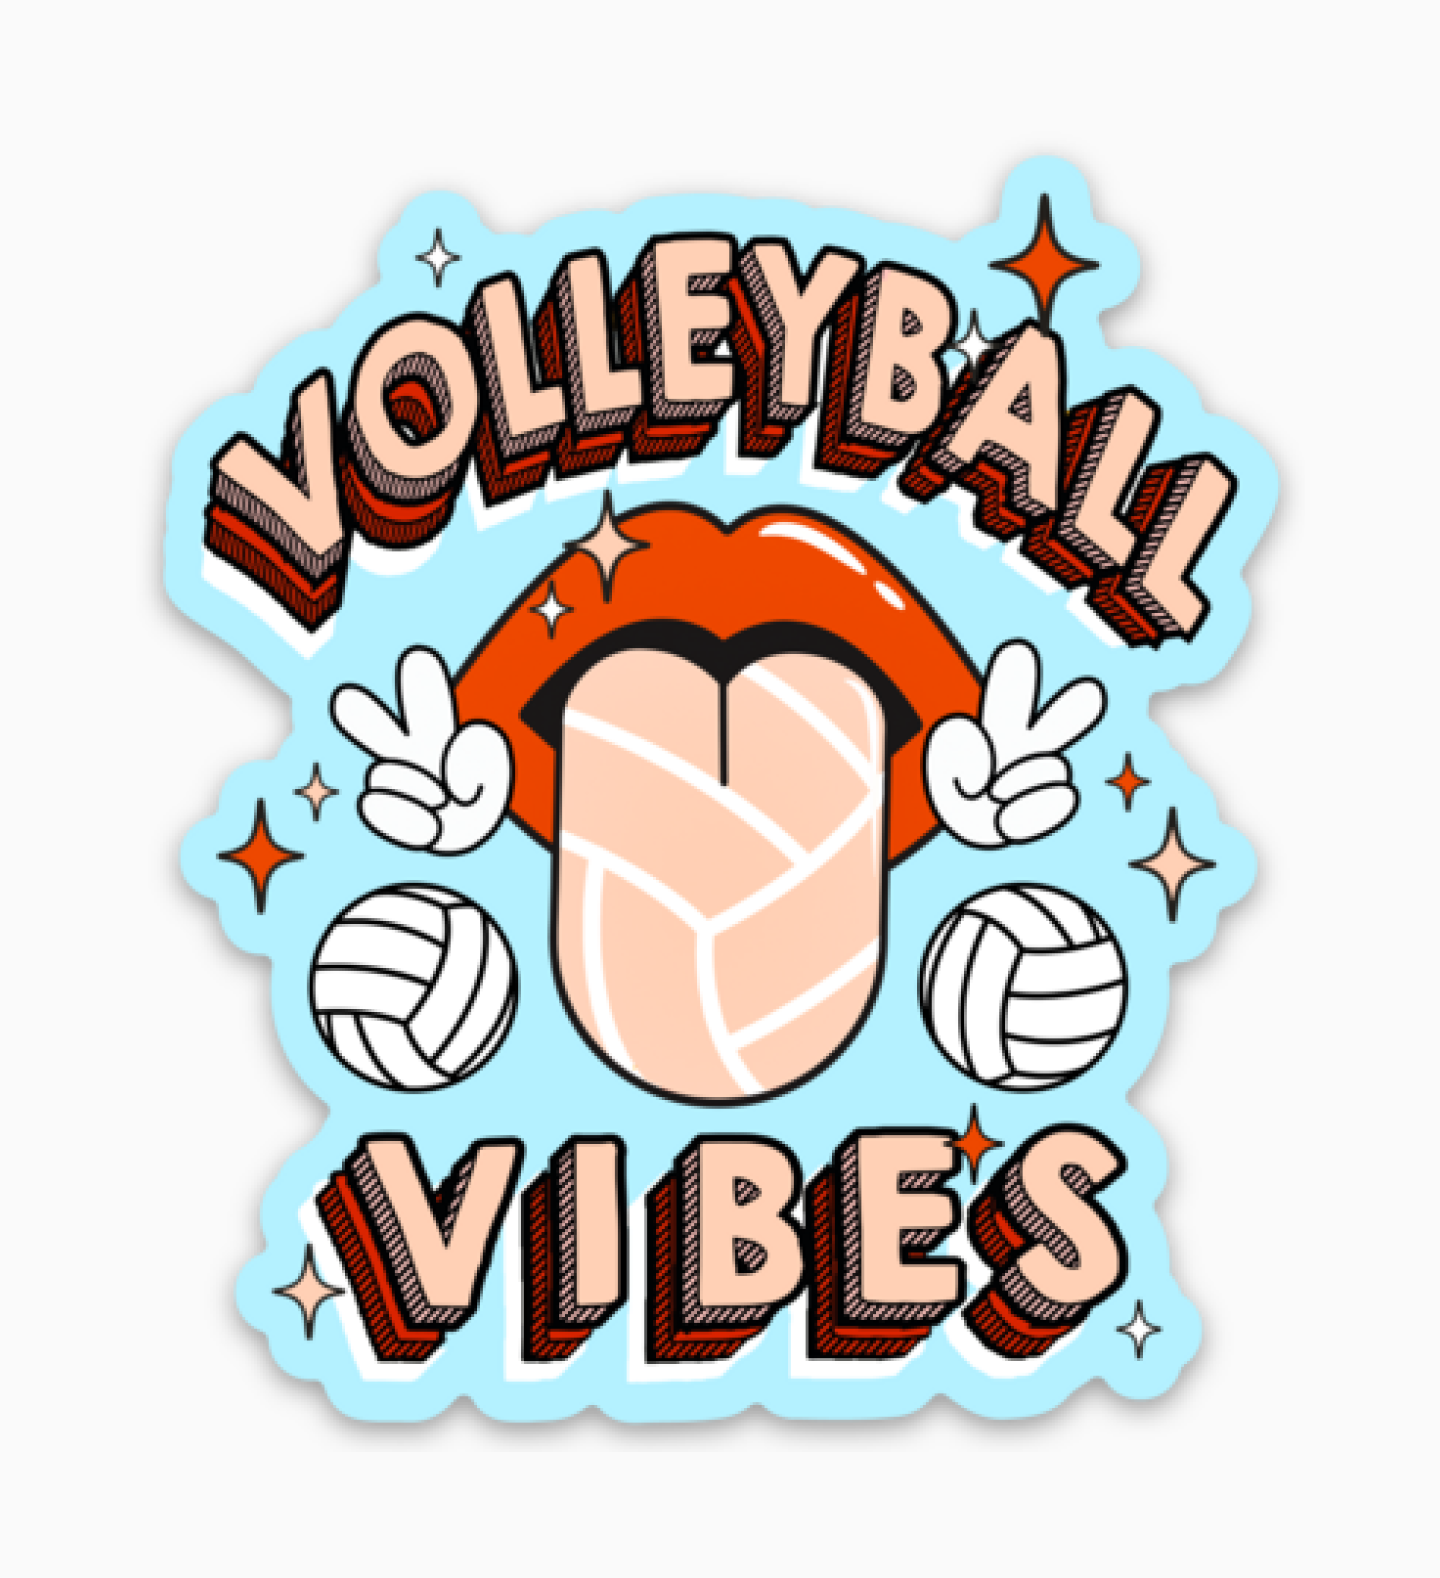 Rockin' Volleyball Vibes Sticker